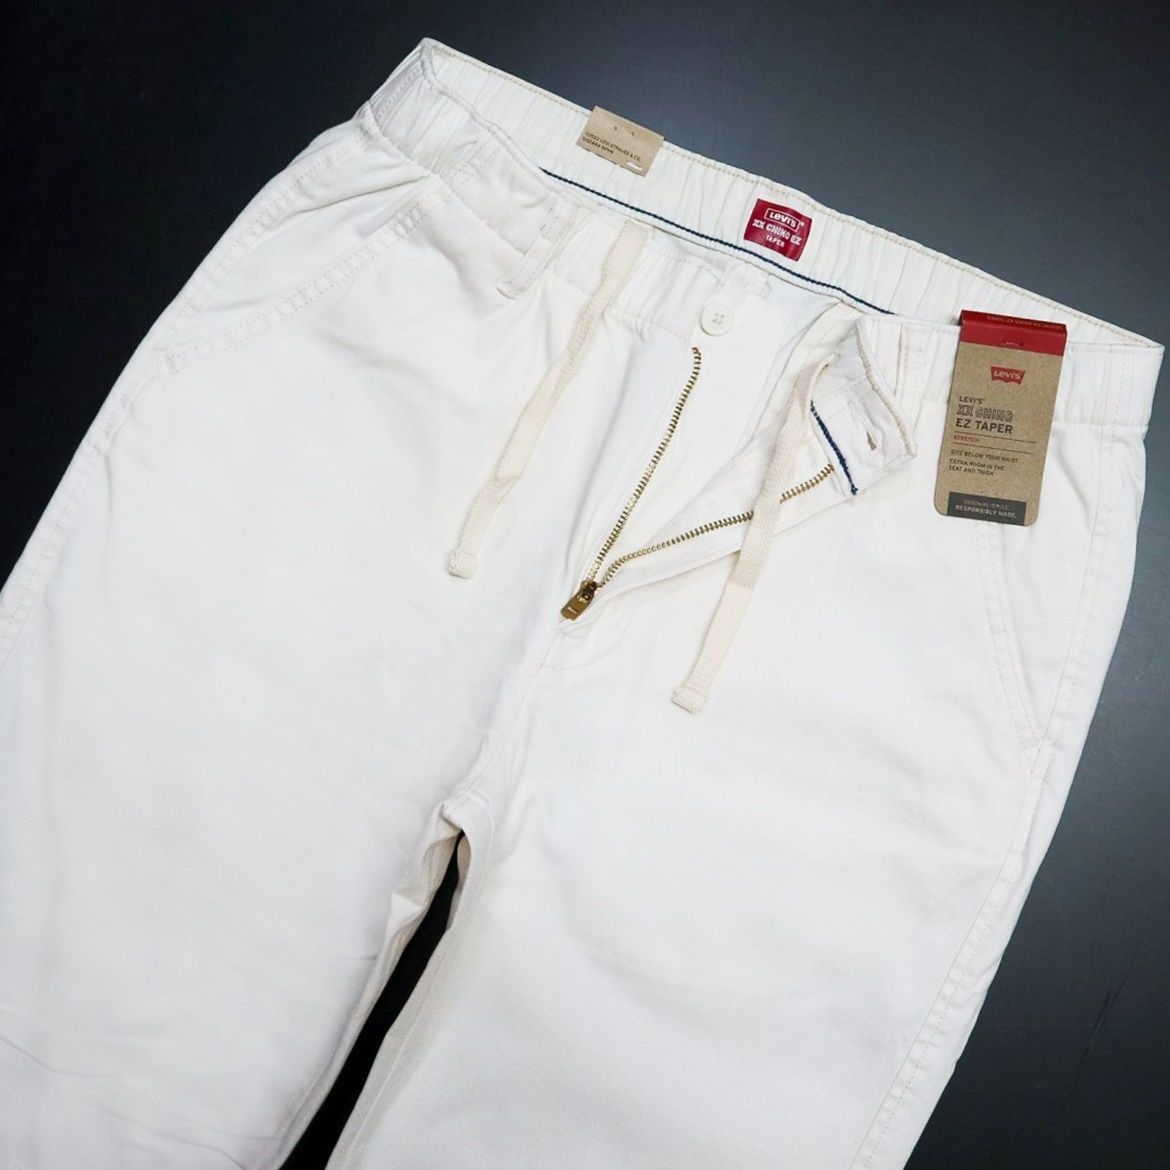 * Levi's Levis XX CHINO новый товар мужской стрейч простой конус брюки из твила длинные брюки L размер [A10401-0020-L] 4 .*QWER*